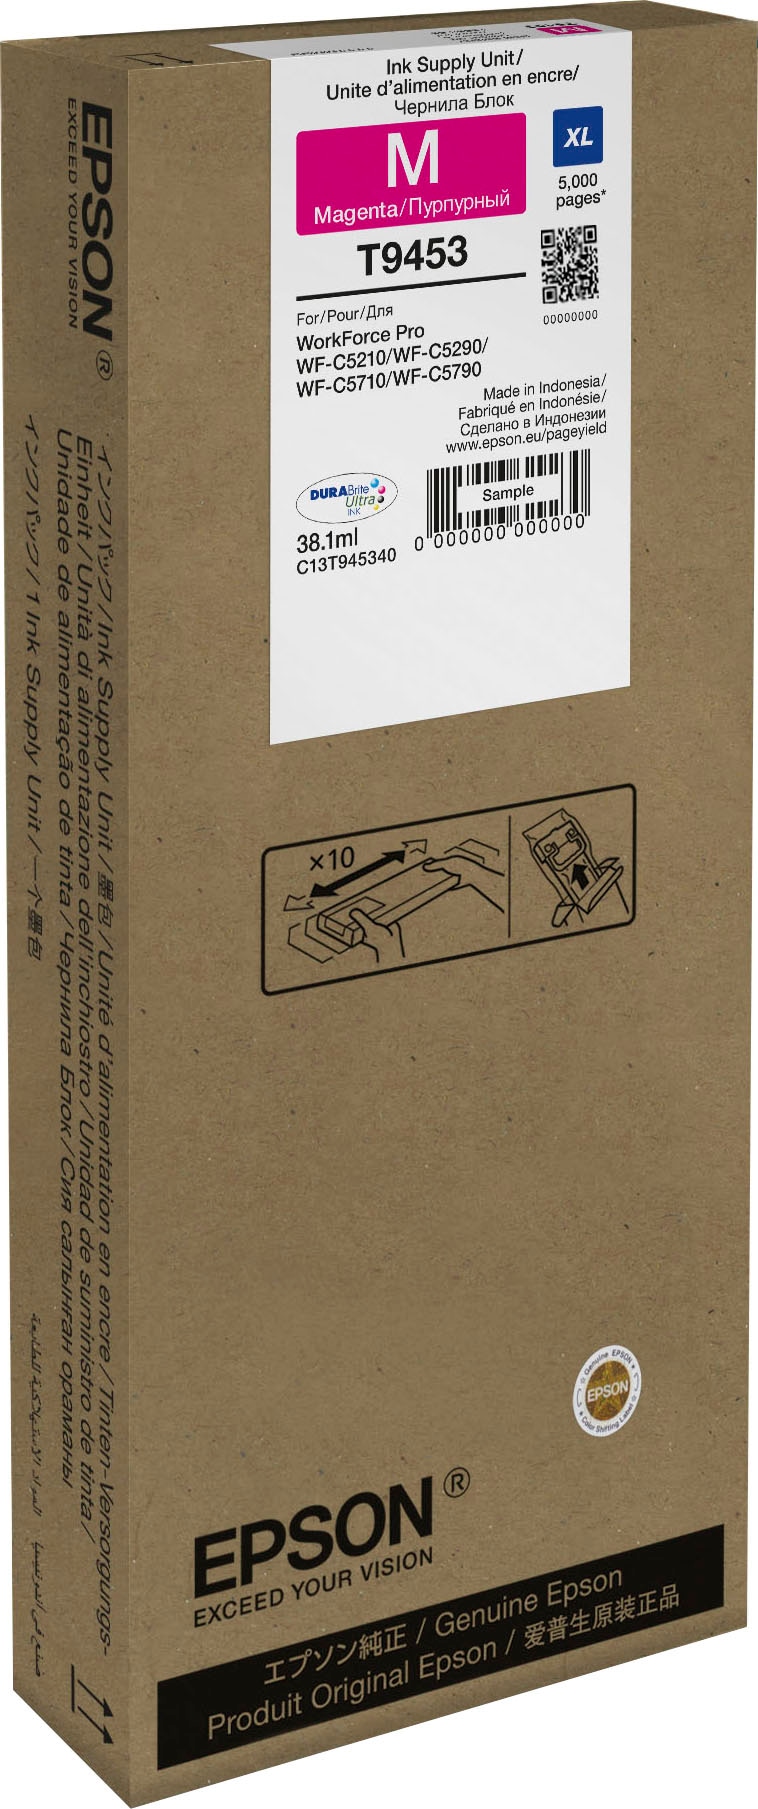 Epson Nachfülltinte »WF-C5xxx Series Ink Cartridge XL Magenta«, für Epson